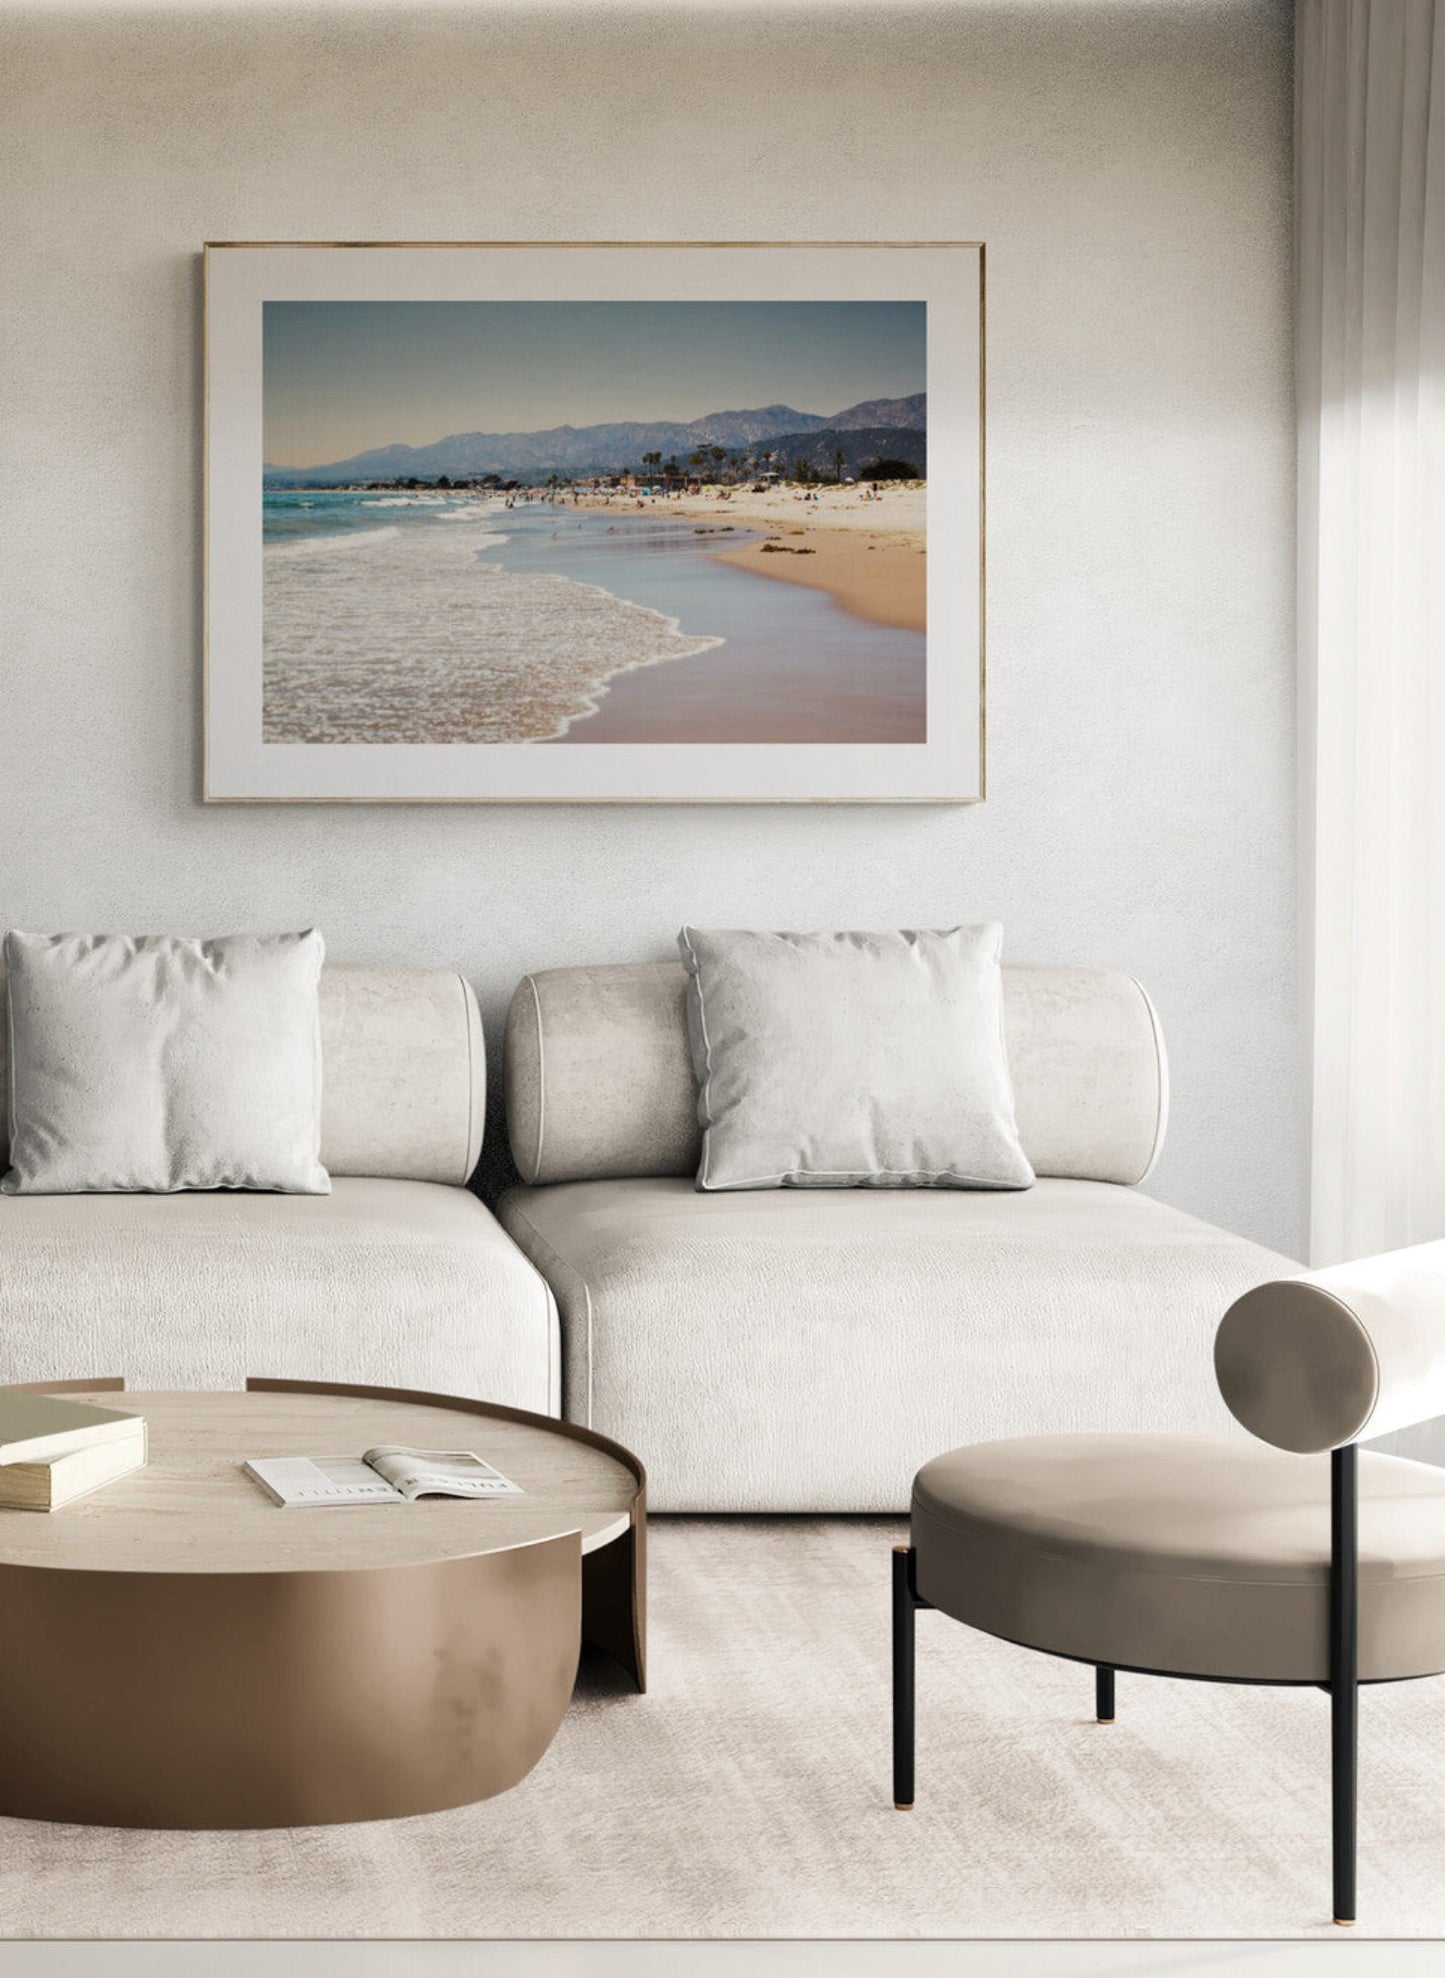 Carpinteria Beach Photograph in a living room as wall art